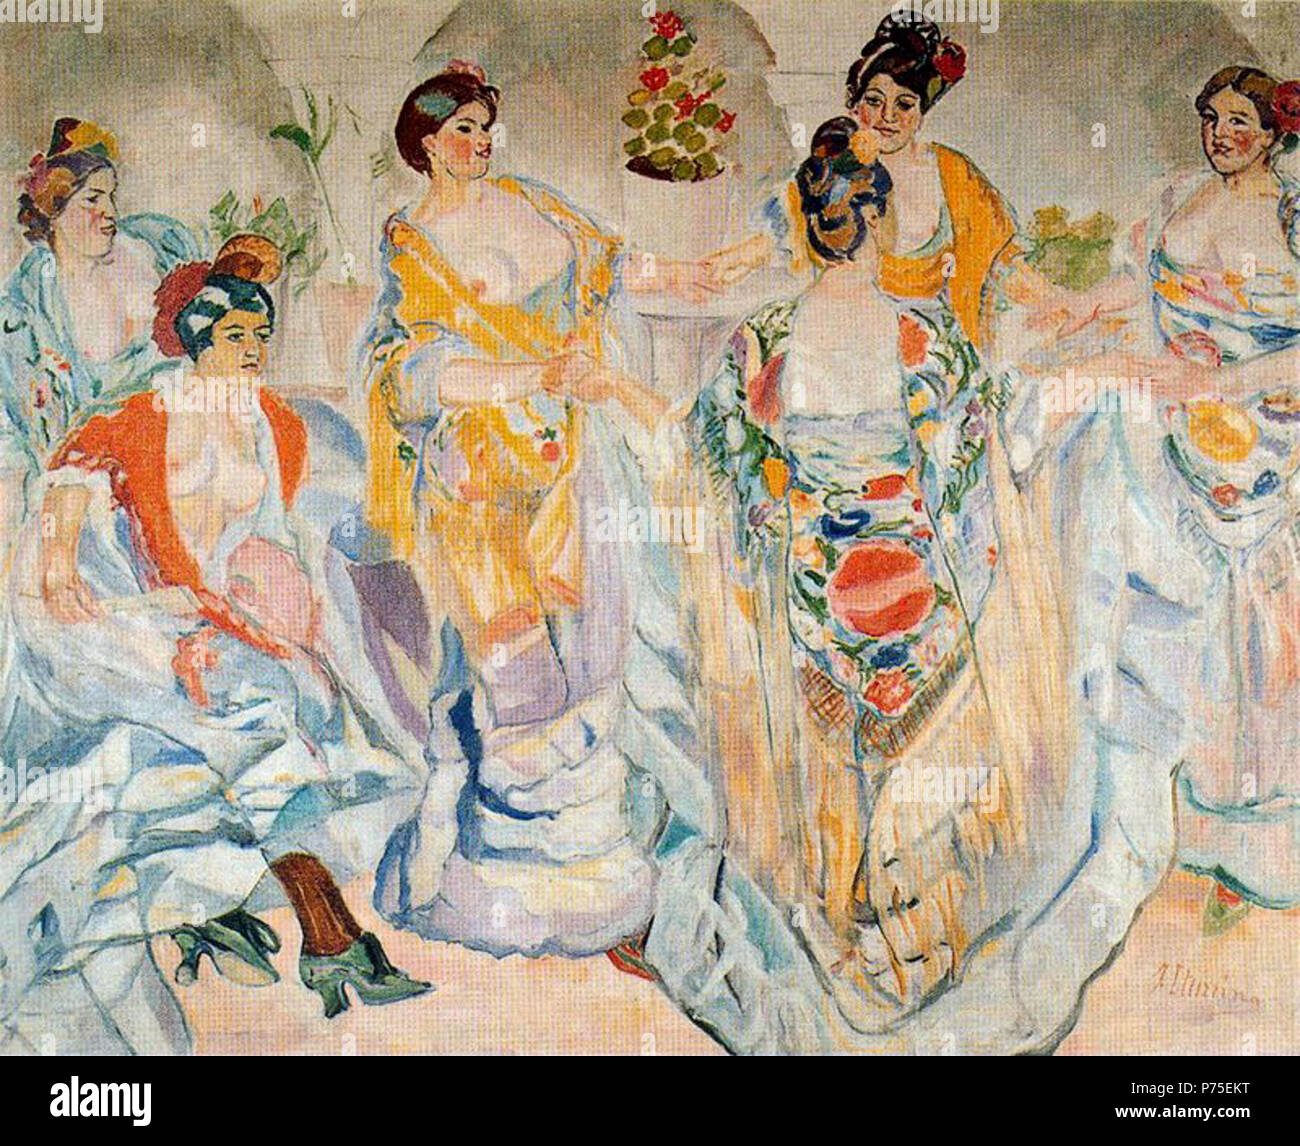 Español: Boceto para el cuadro 'En el patio' (mujeres con mantón de Manila).  . N/A 124 Francisco Iturrino En el patio (apunte Stock Photo - Alamy